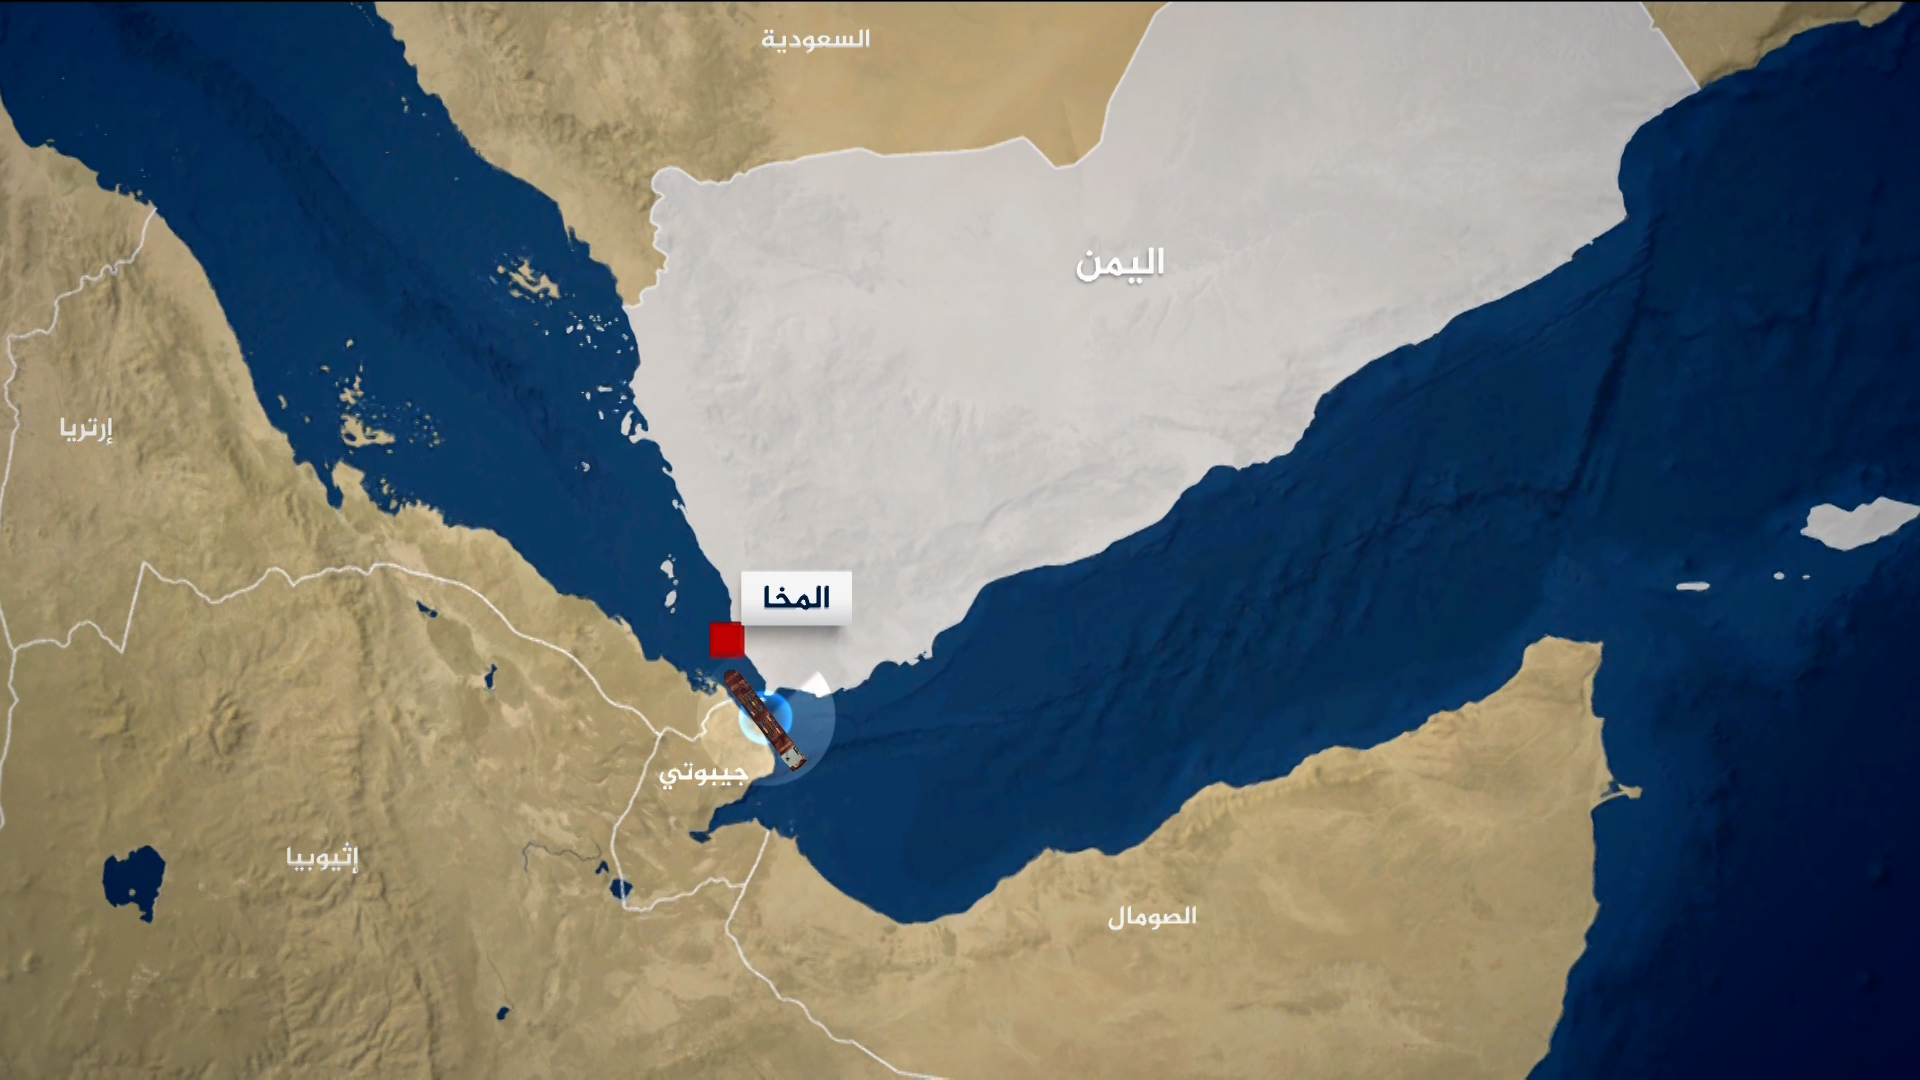 إصابة سفينة في هجوم قبالة سواحل المخا اليمنية | أخبار – البوكس نيوز